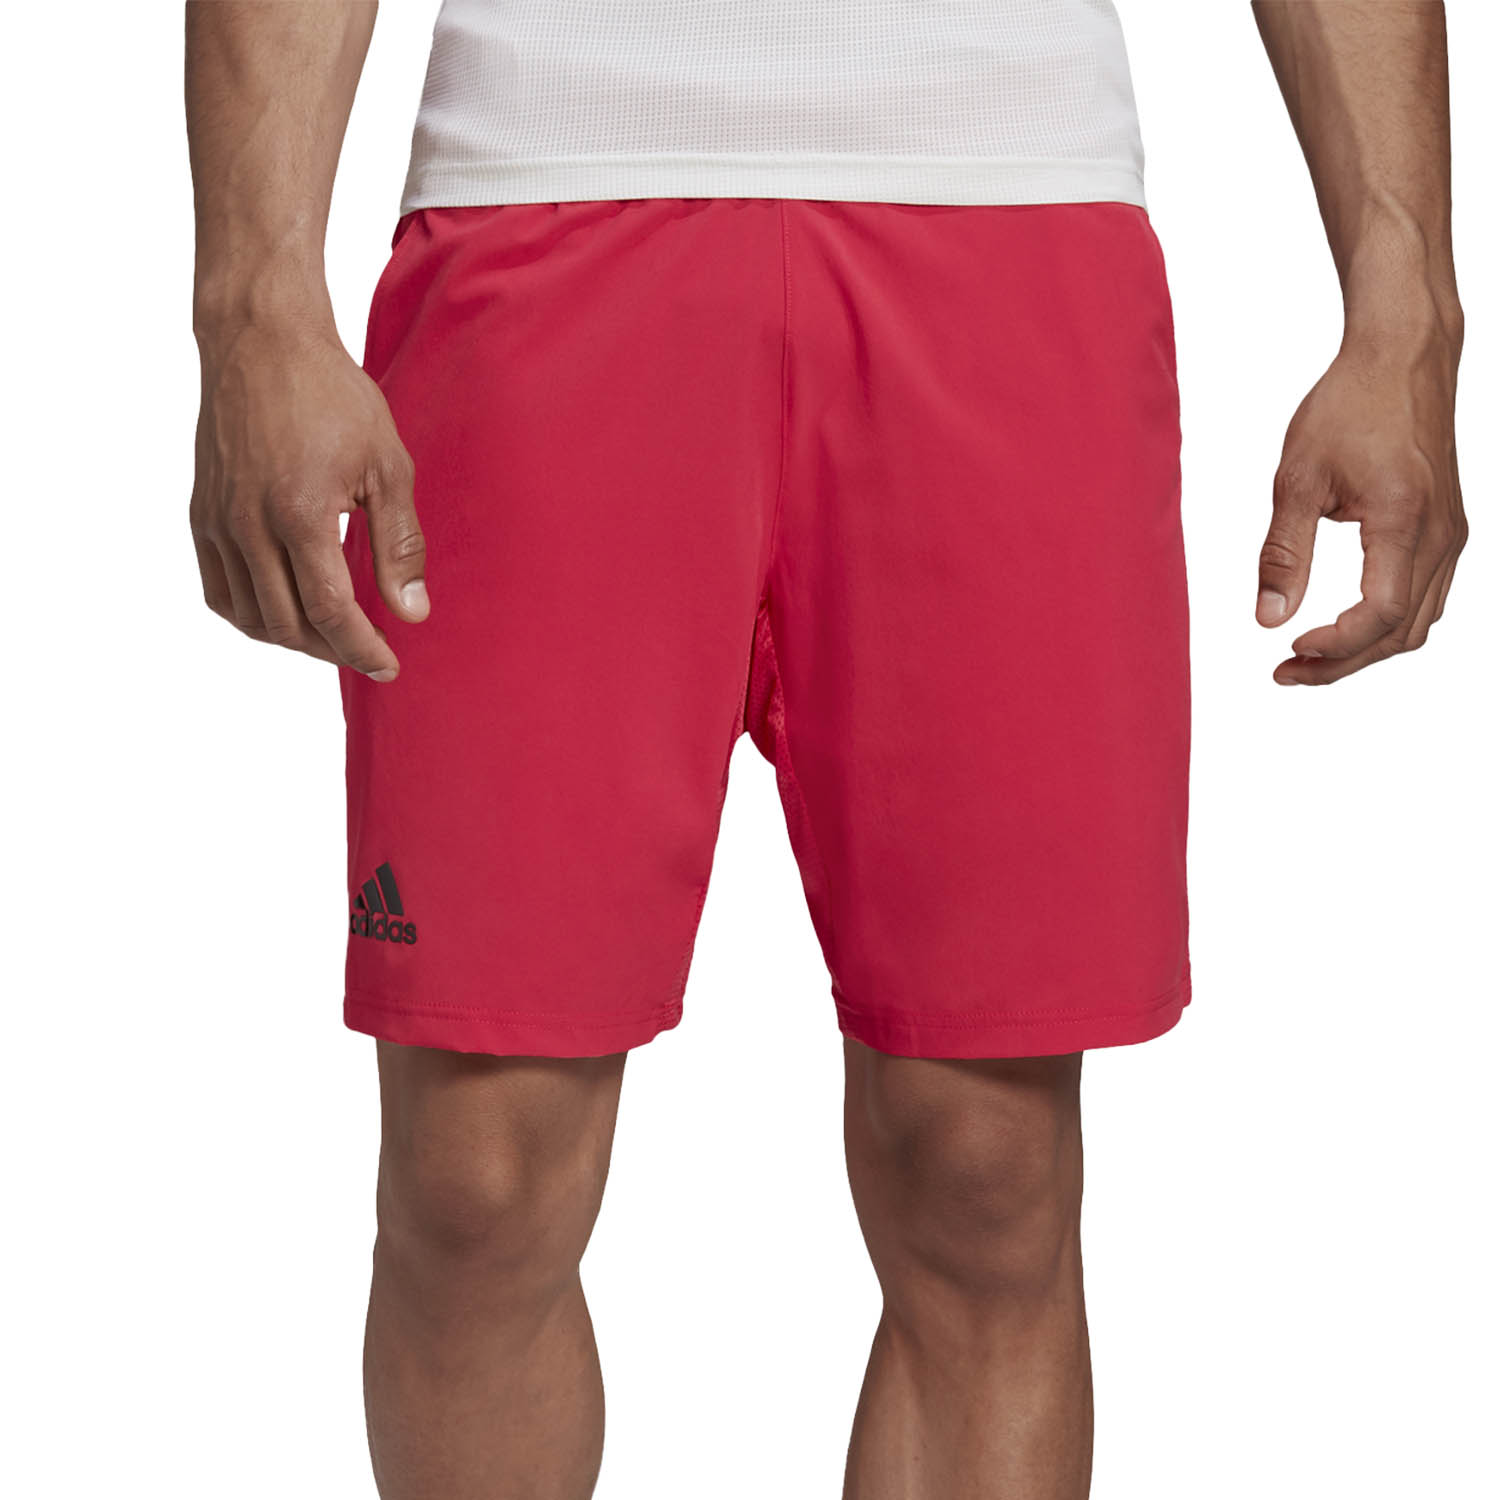 pantaloncini tennis adidas uomo